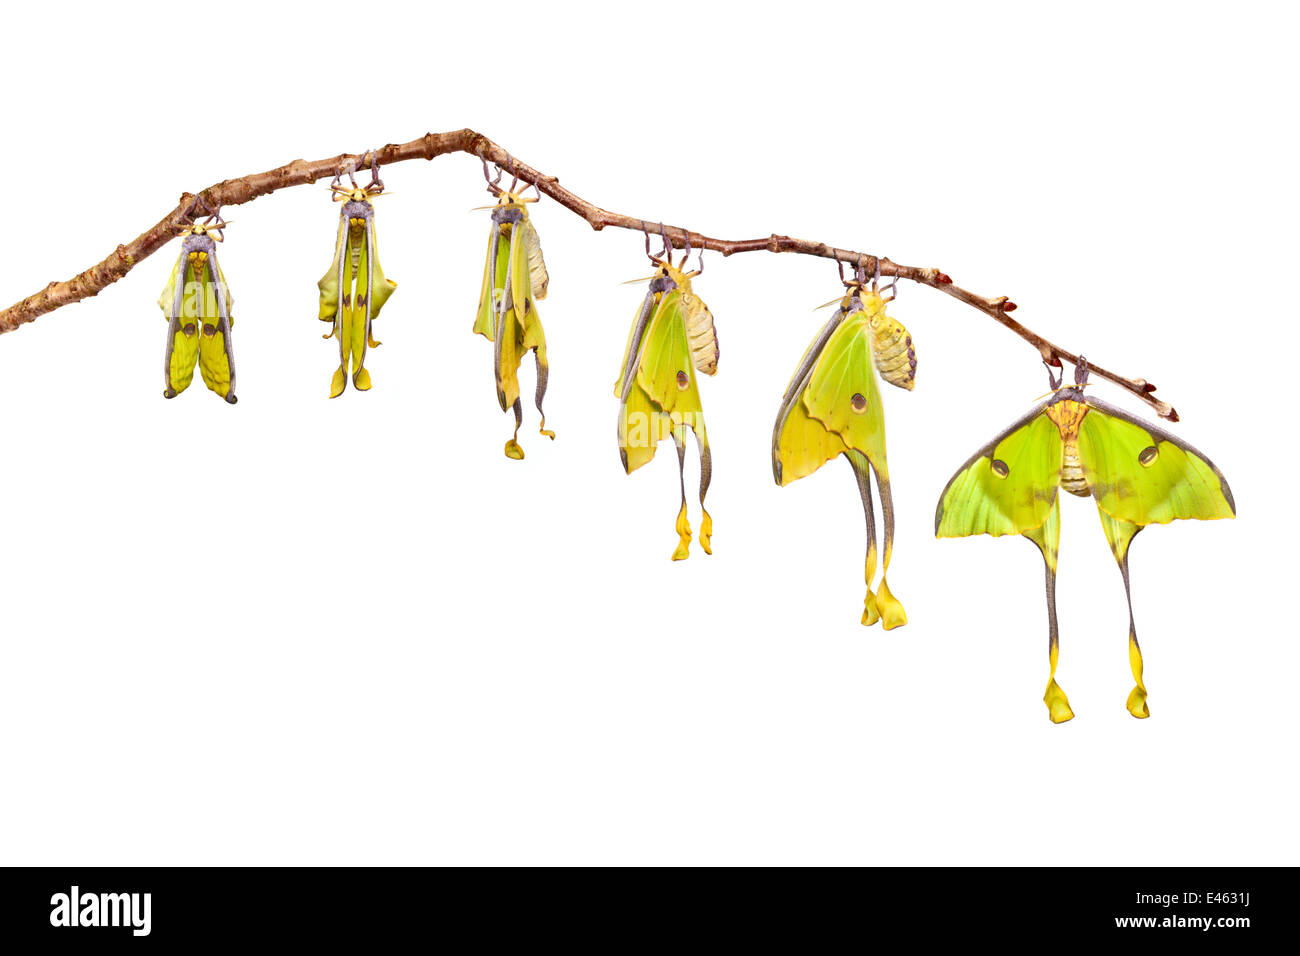 Afrikanische Mond Motte (Argema Mimosae) digitale zusammengesetzten Sequenz, zeigt Flügel erweitert nach Austritt aus dem Kokon, fotografiert vor einem weißen Hintergrund, Austalien aus Afrika. In Gefangenschaft. Stockfoto